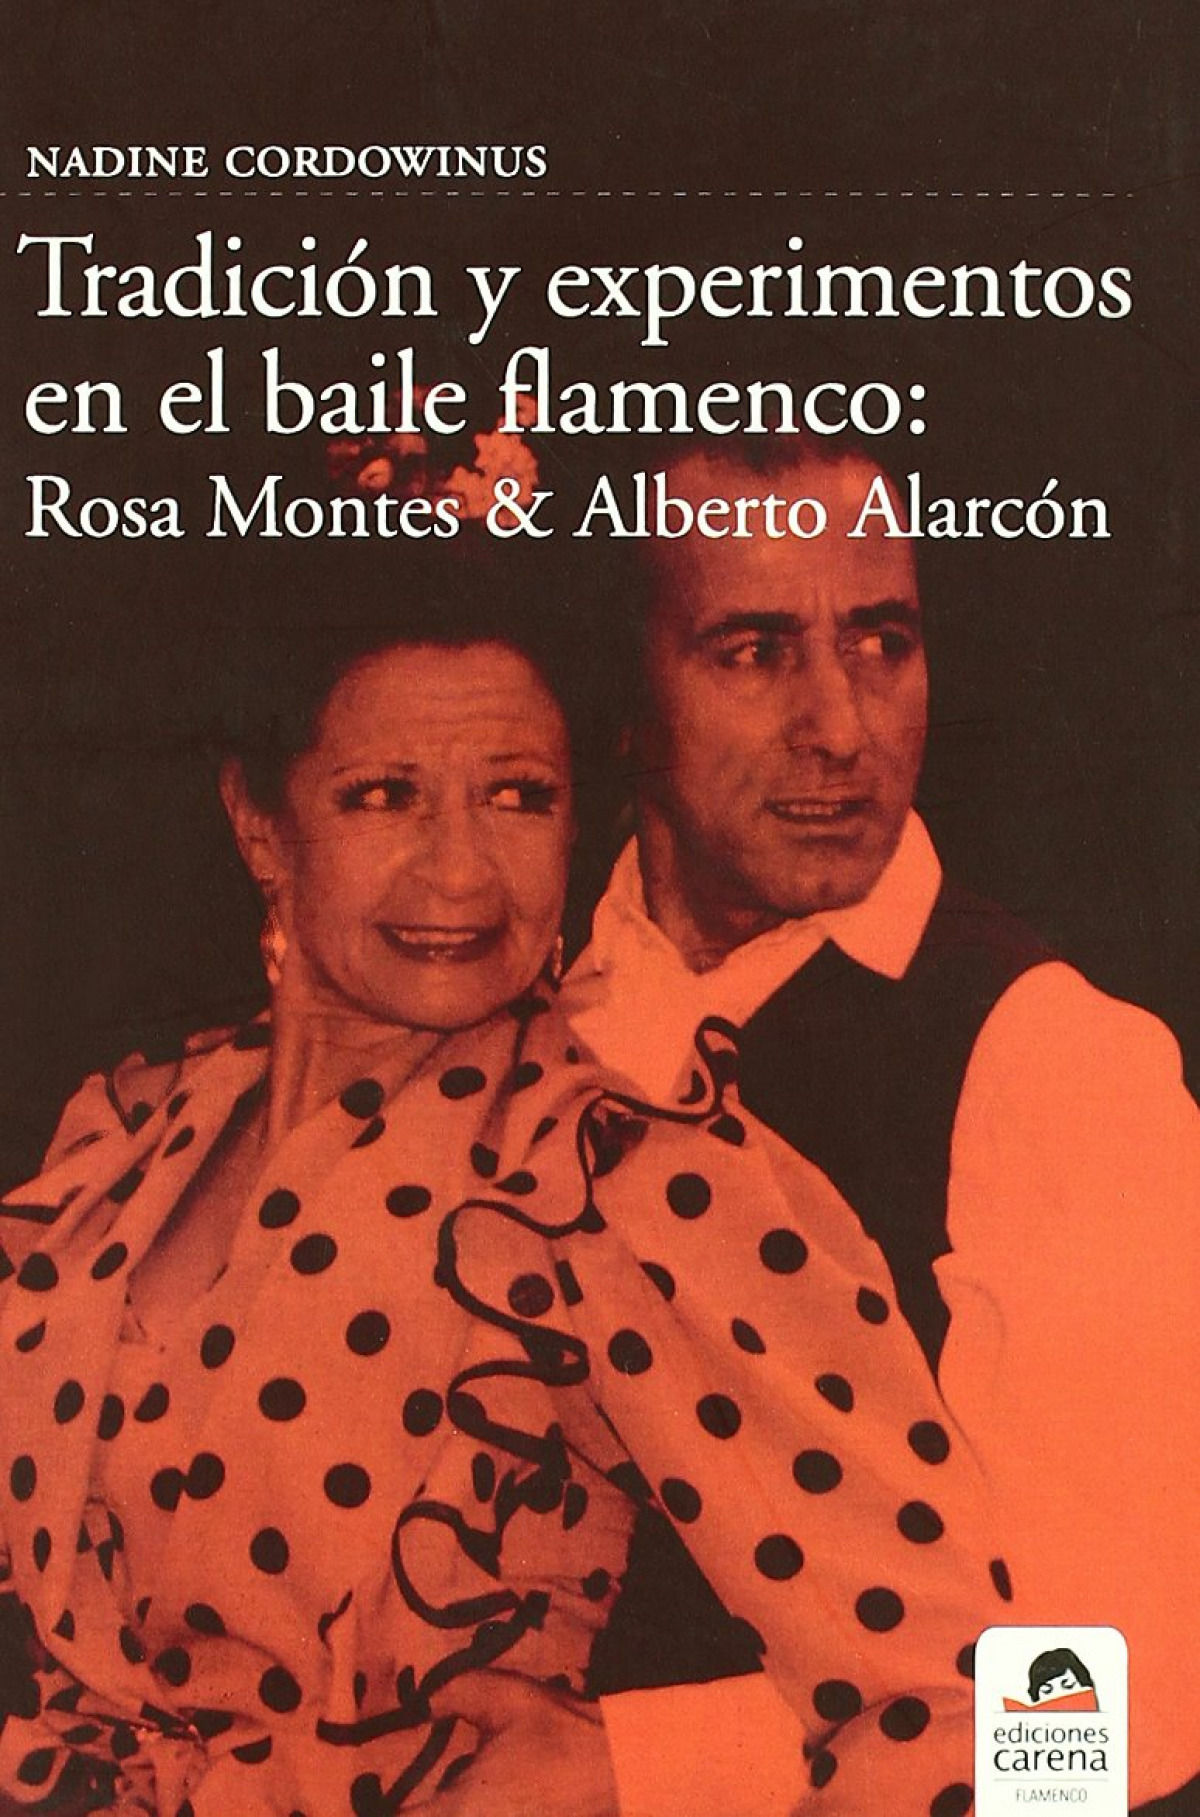 Tradición y experimentos en el baile flamenco - Cordowinus Nadine